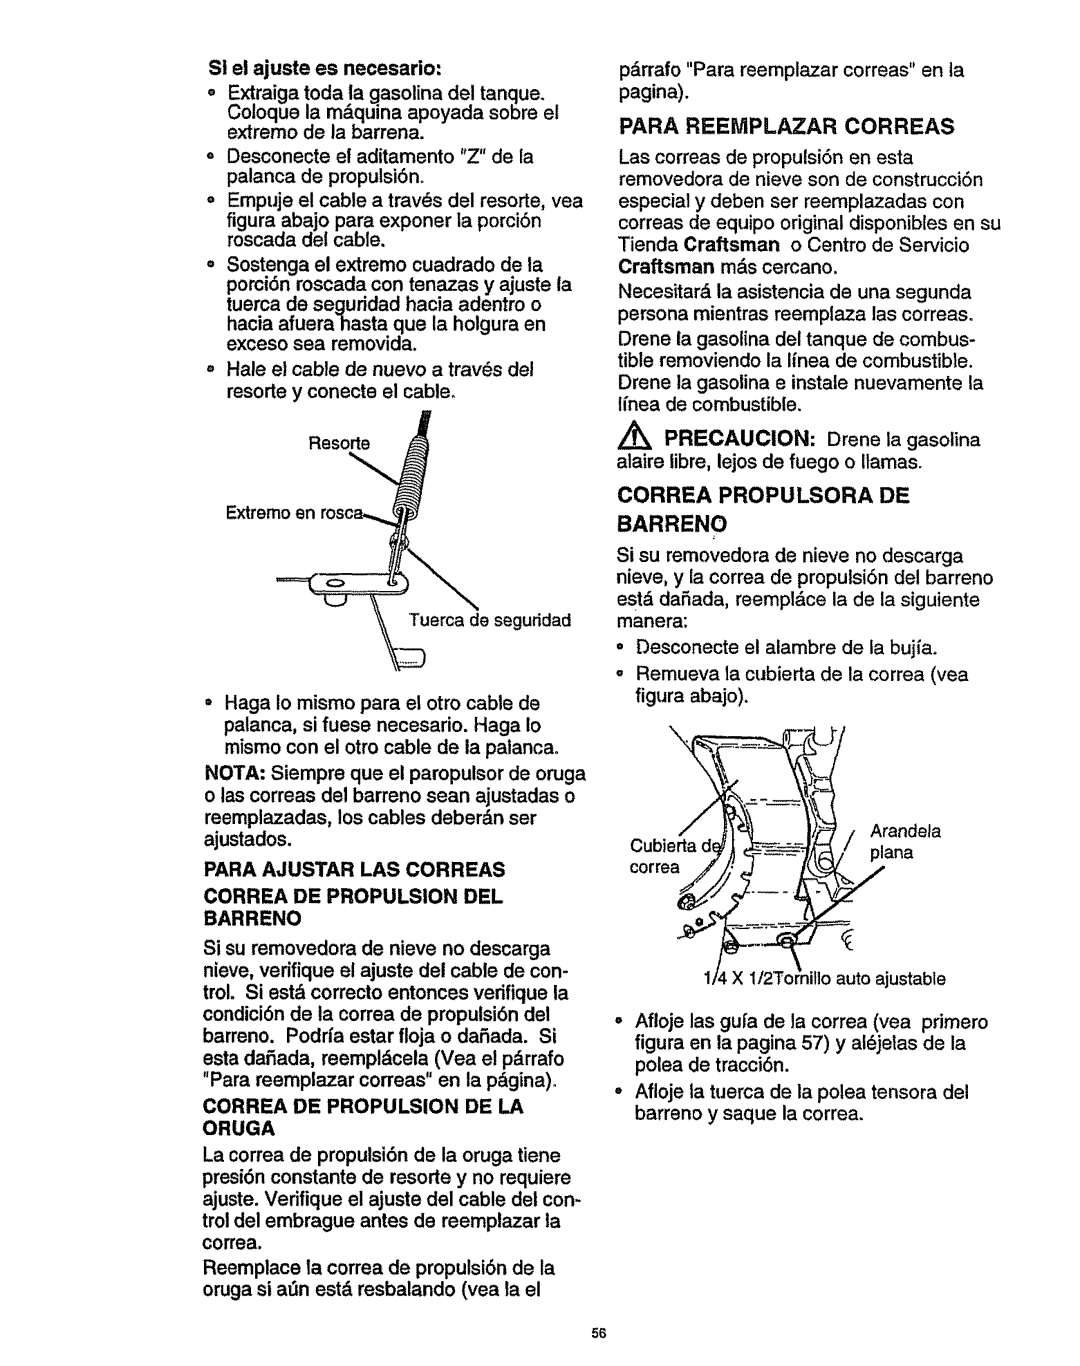 Craftsman 536.886141 manual Para Reemplazar Correas, Correa Propulsora DE, Correa DE Propulsion DE LA Oruga 